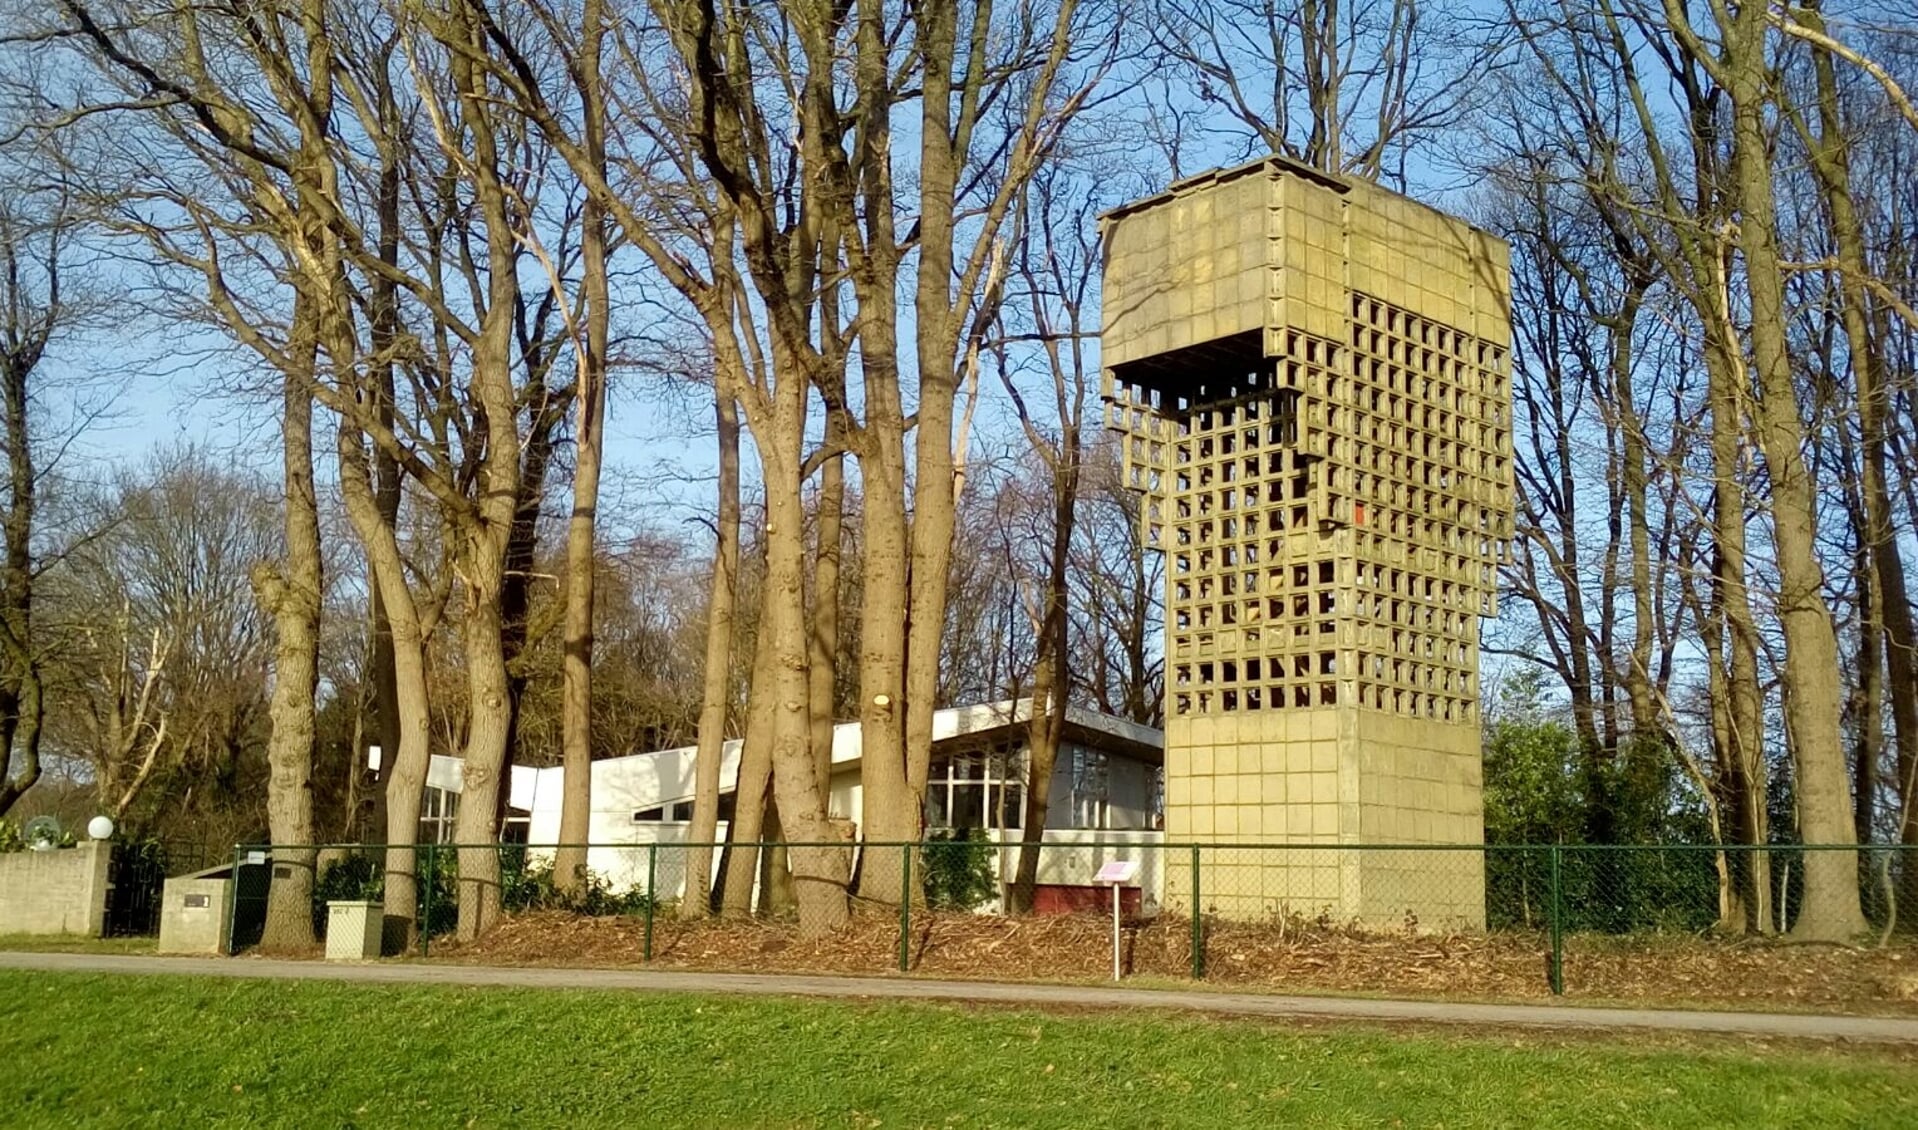 De luchtwachttoren aan de Broekweg in Maashees werd gebruikt tijdens de Koude Oorlog.